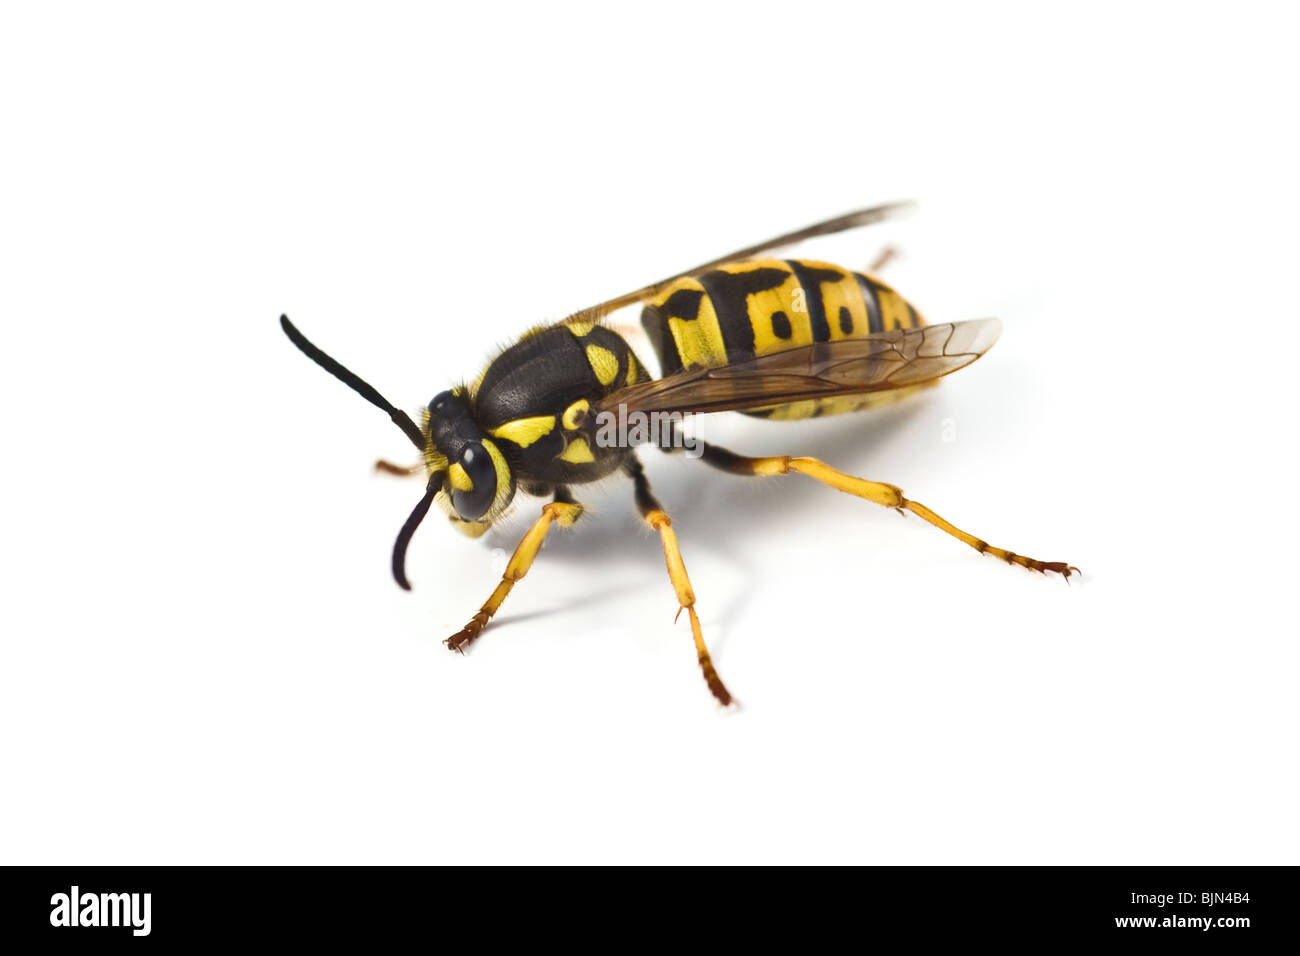 wasp isolated on white background Stock Photo